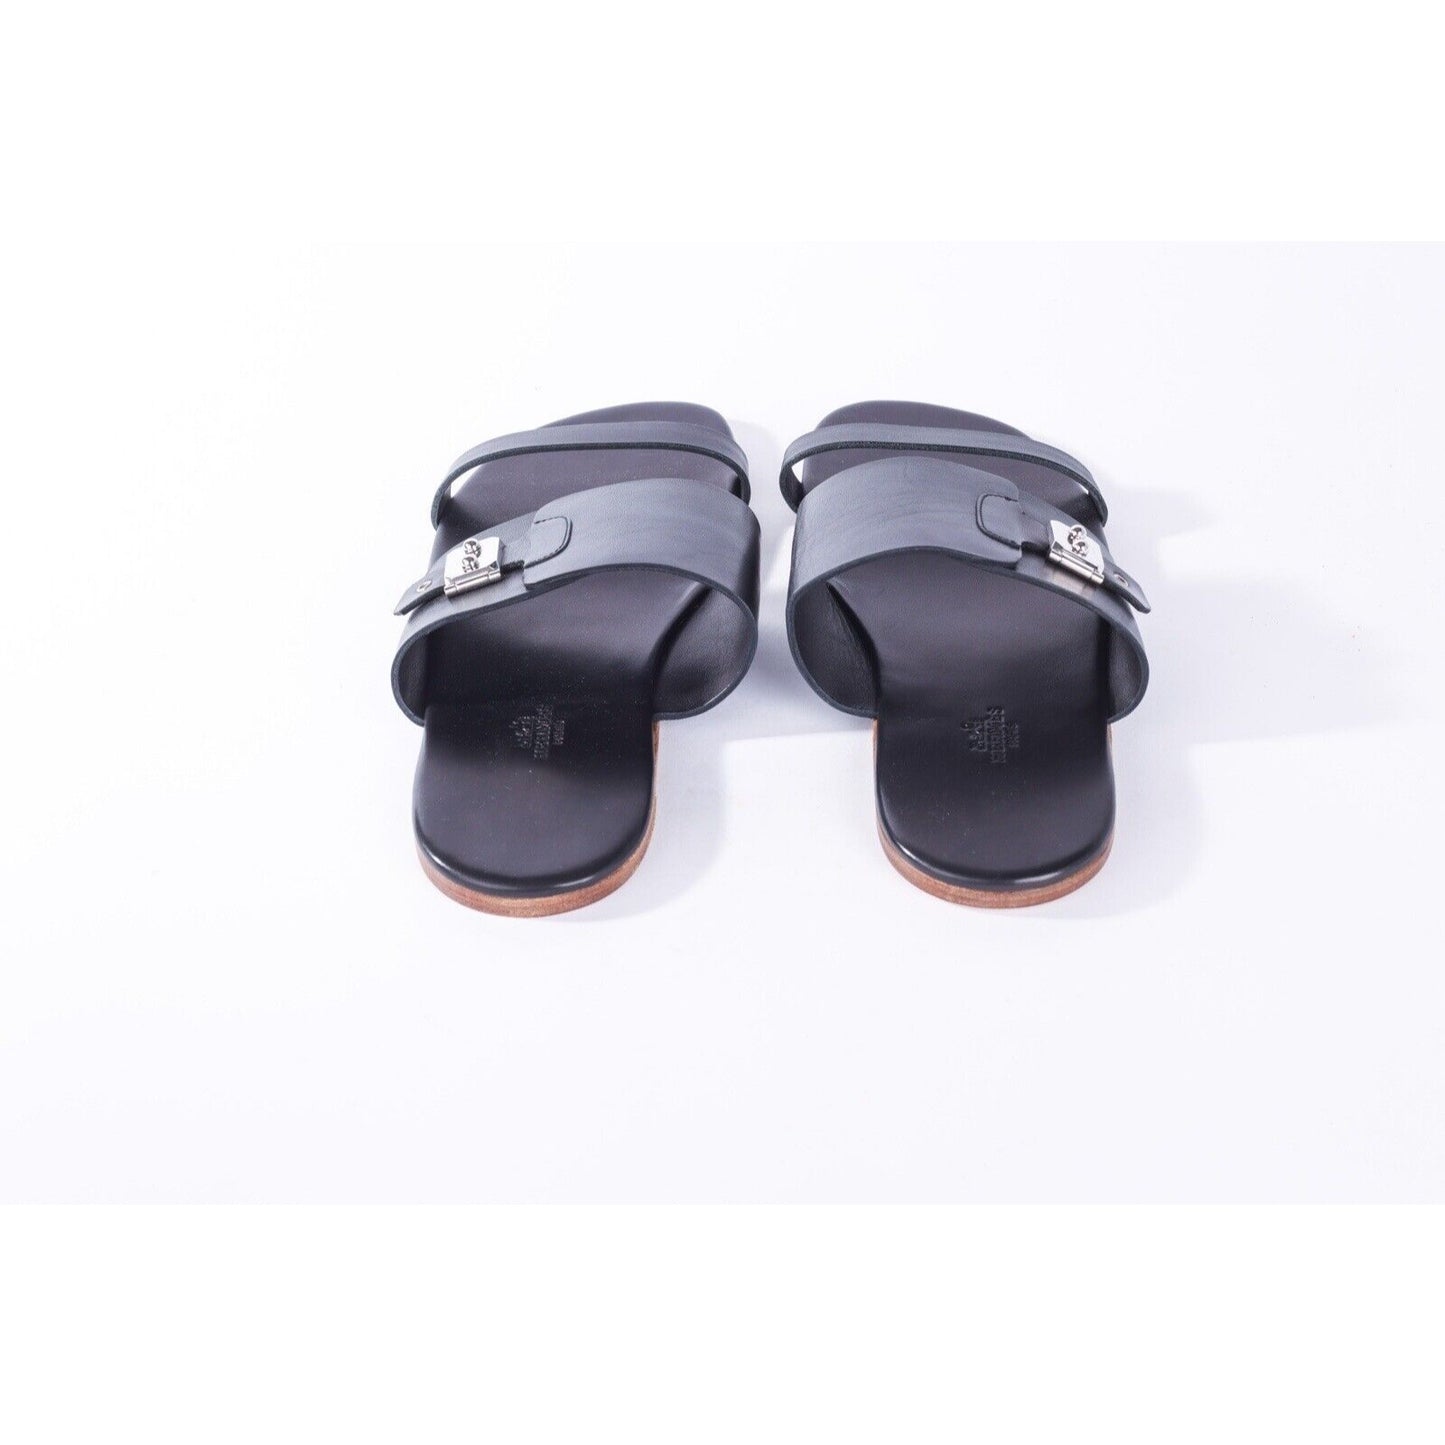 Hermes Men's Qatar Style Leather Sandal